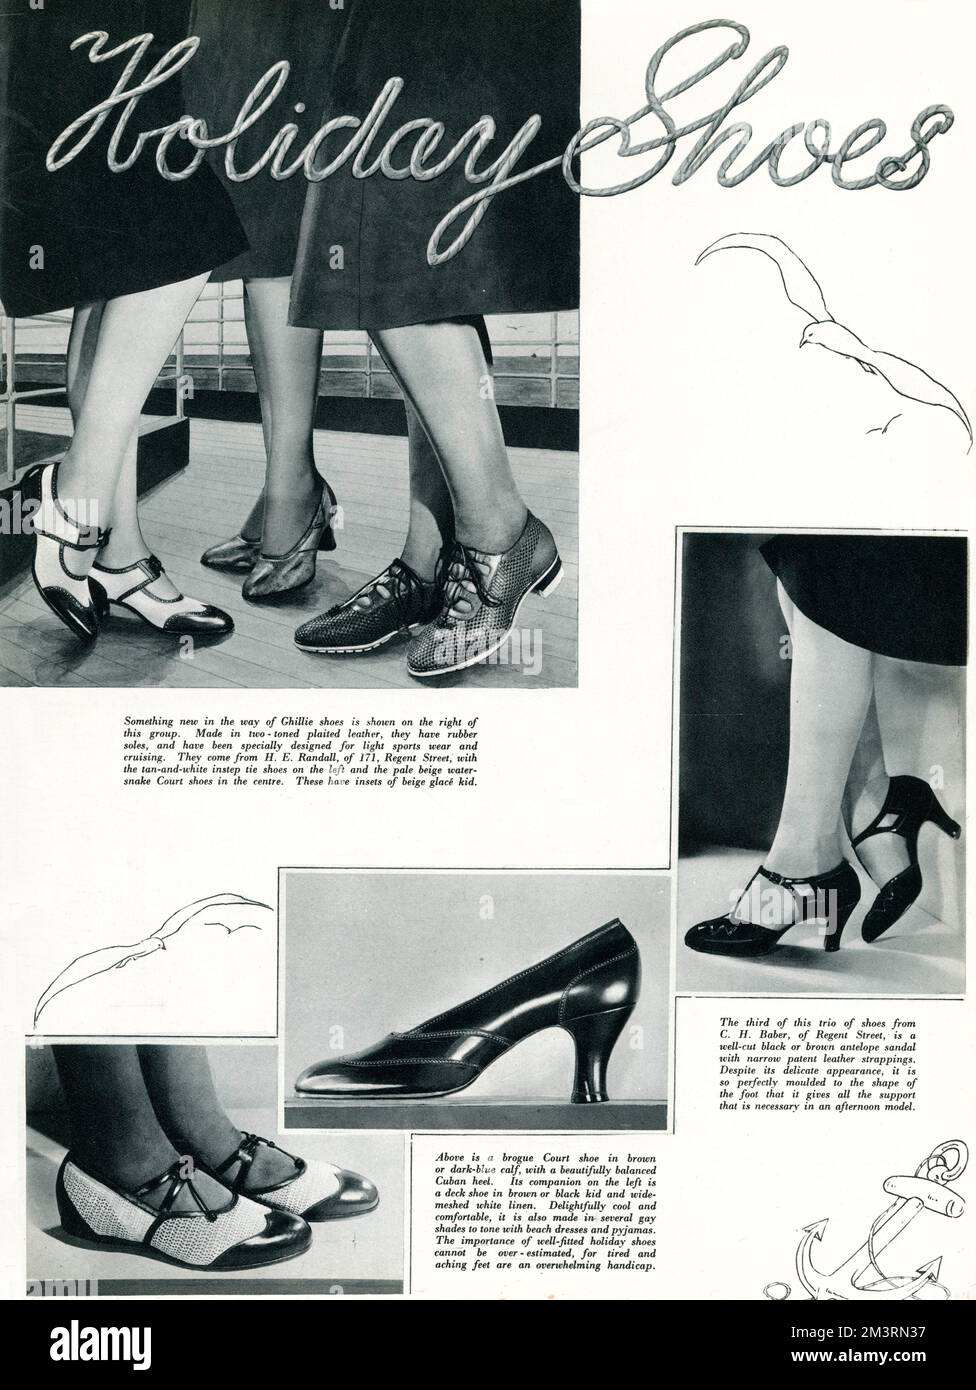 White t bar shoes Banque de photographies et d'images à haute résolution -  Alamy